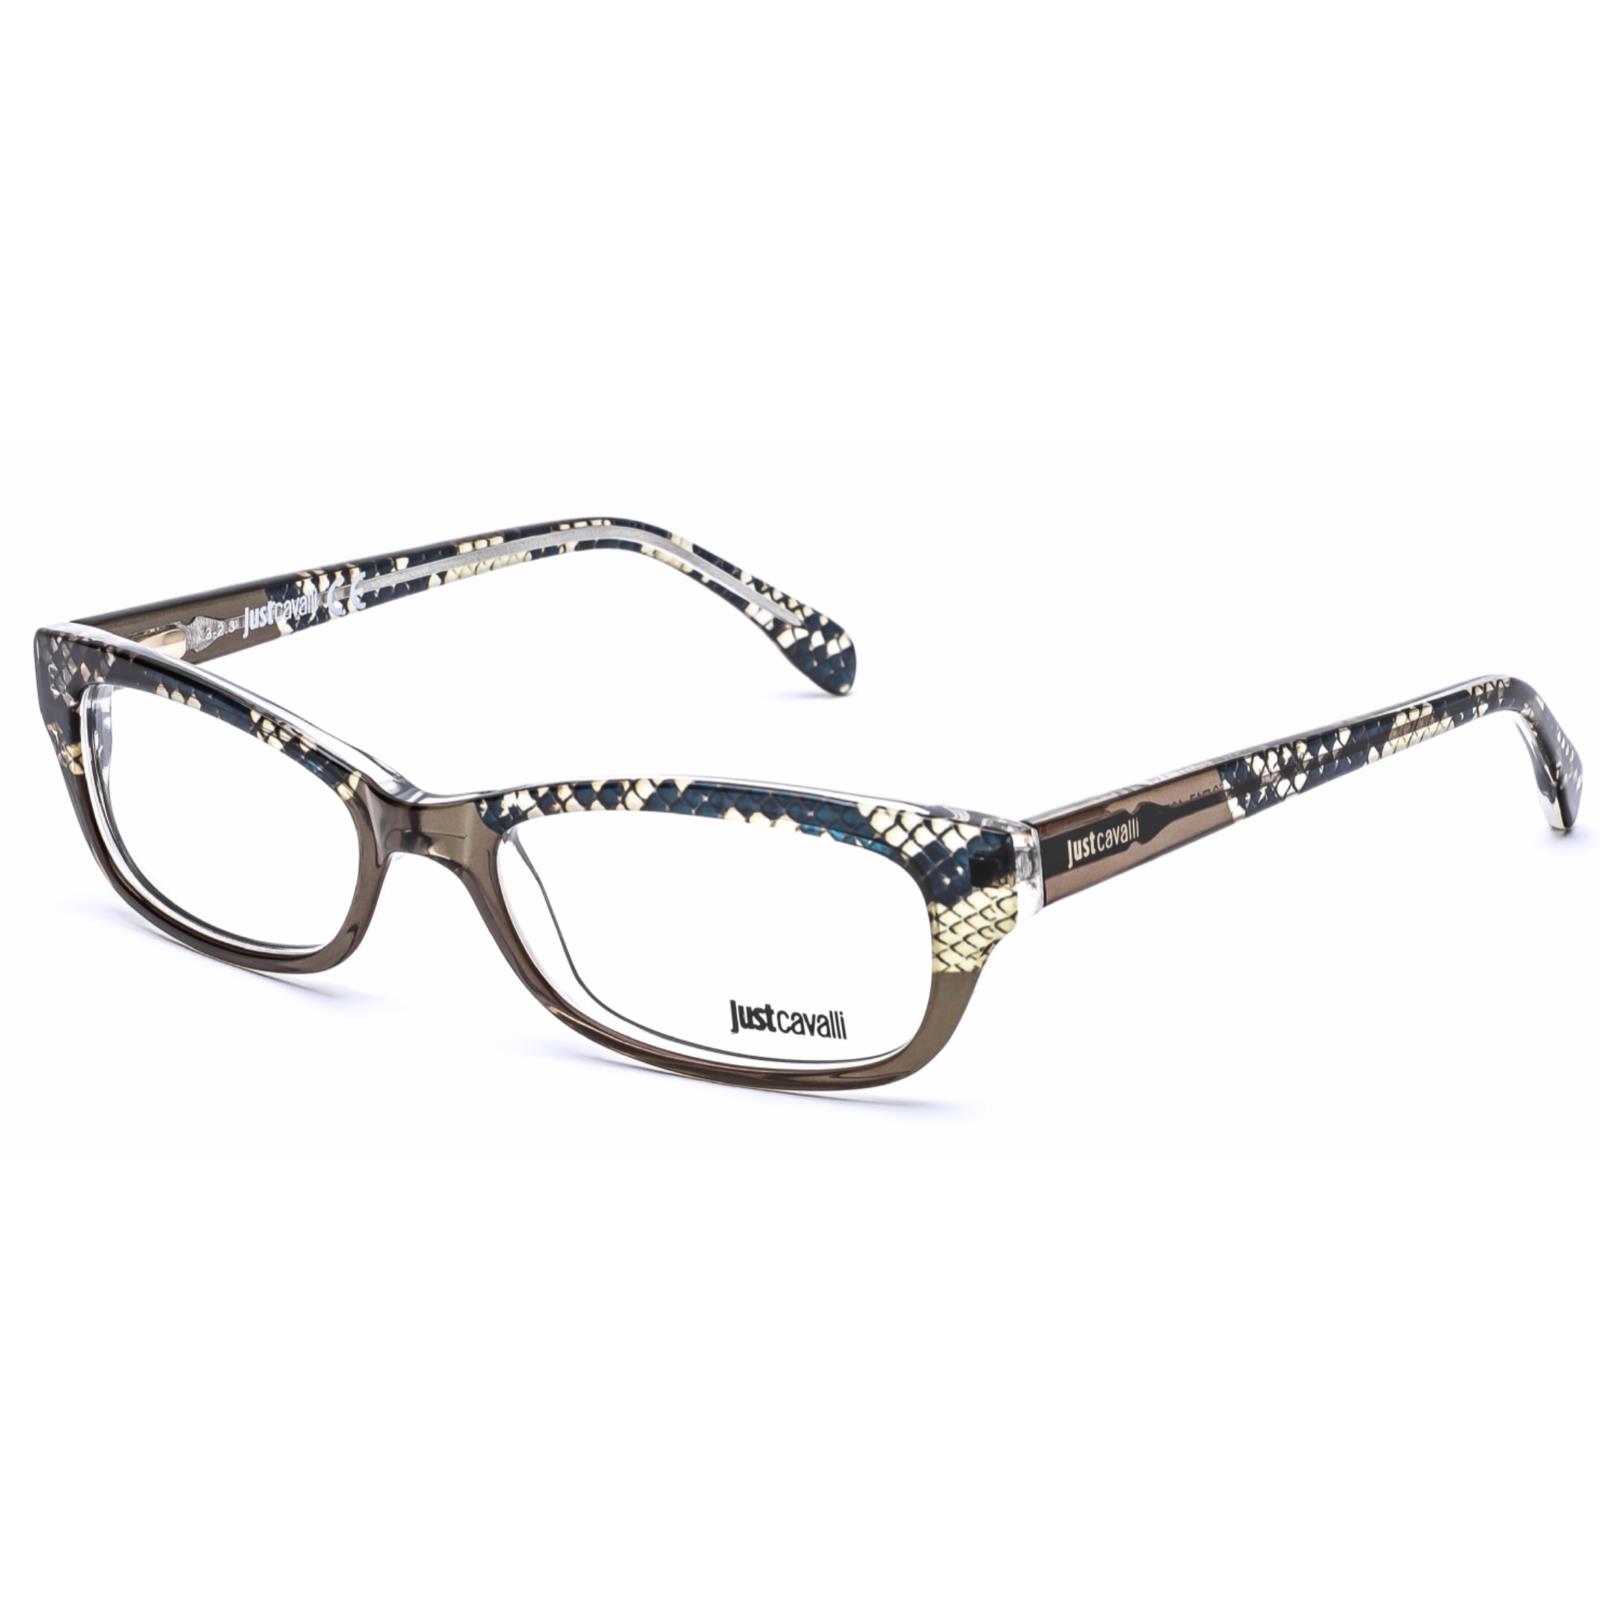 Just Cavalli Eyeglasses JC0473 047 52-16 140 Snake Skin Light Brown Frames